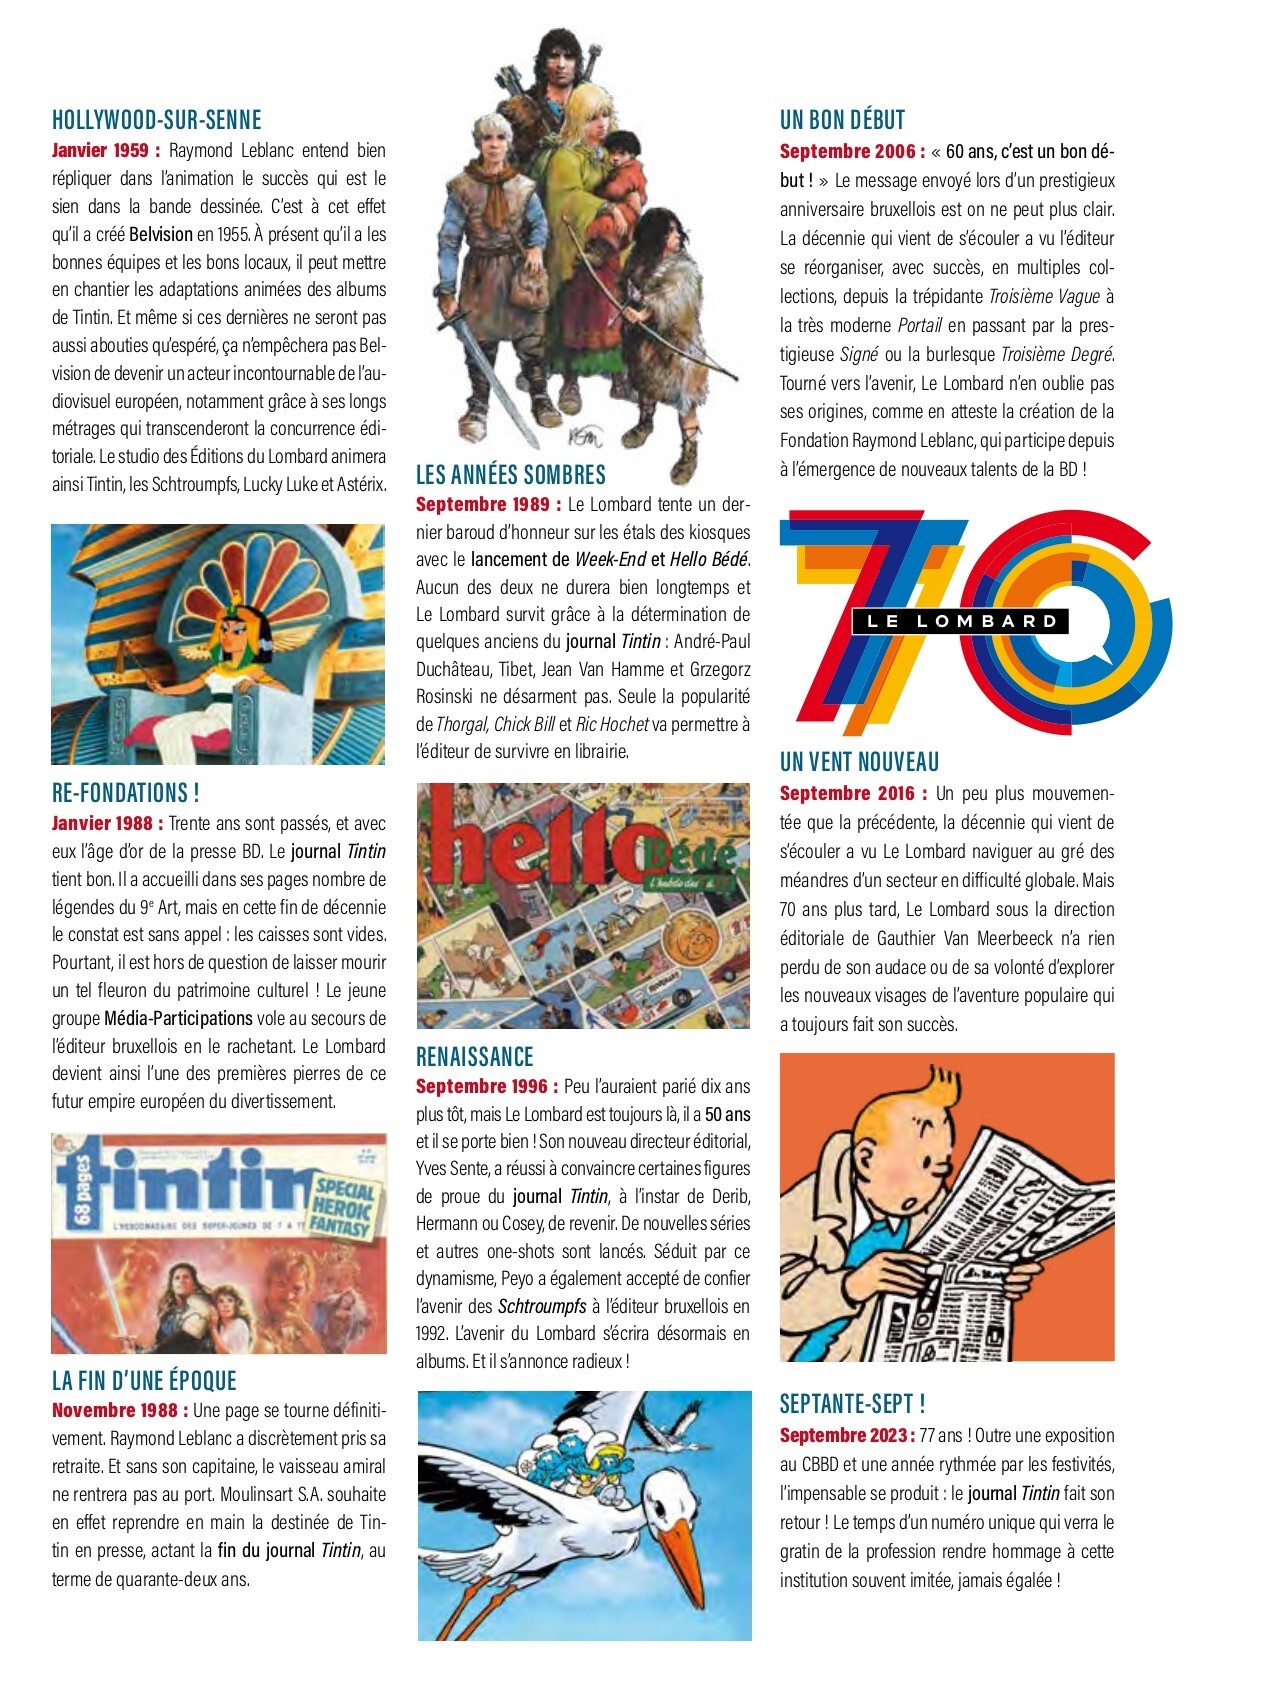 Fondé par Hergé et le Chestrolais Raymond Leblanc, le journal Tintin a 77  ans - TV Lux